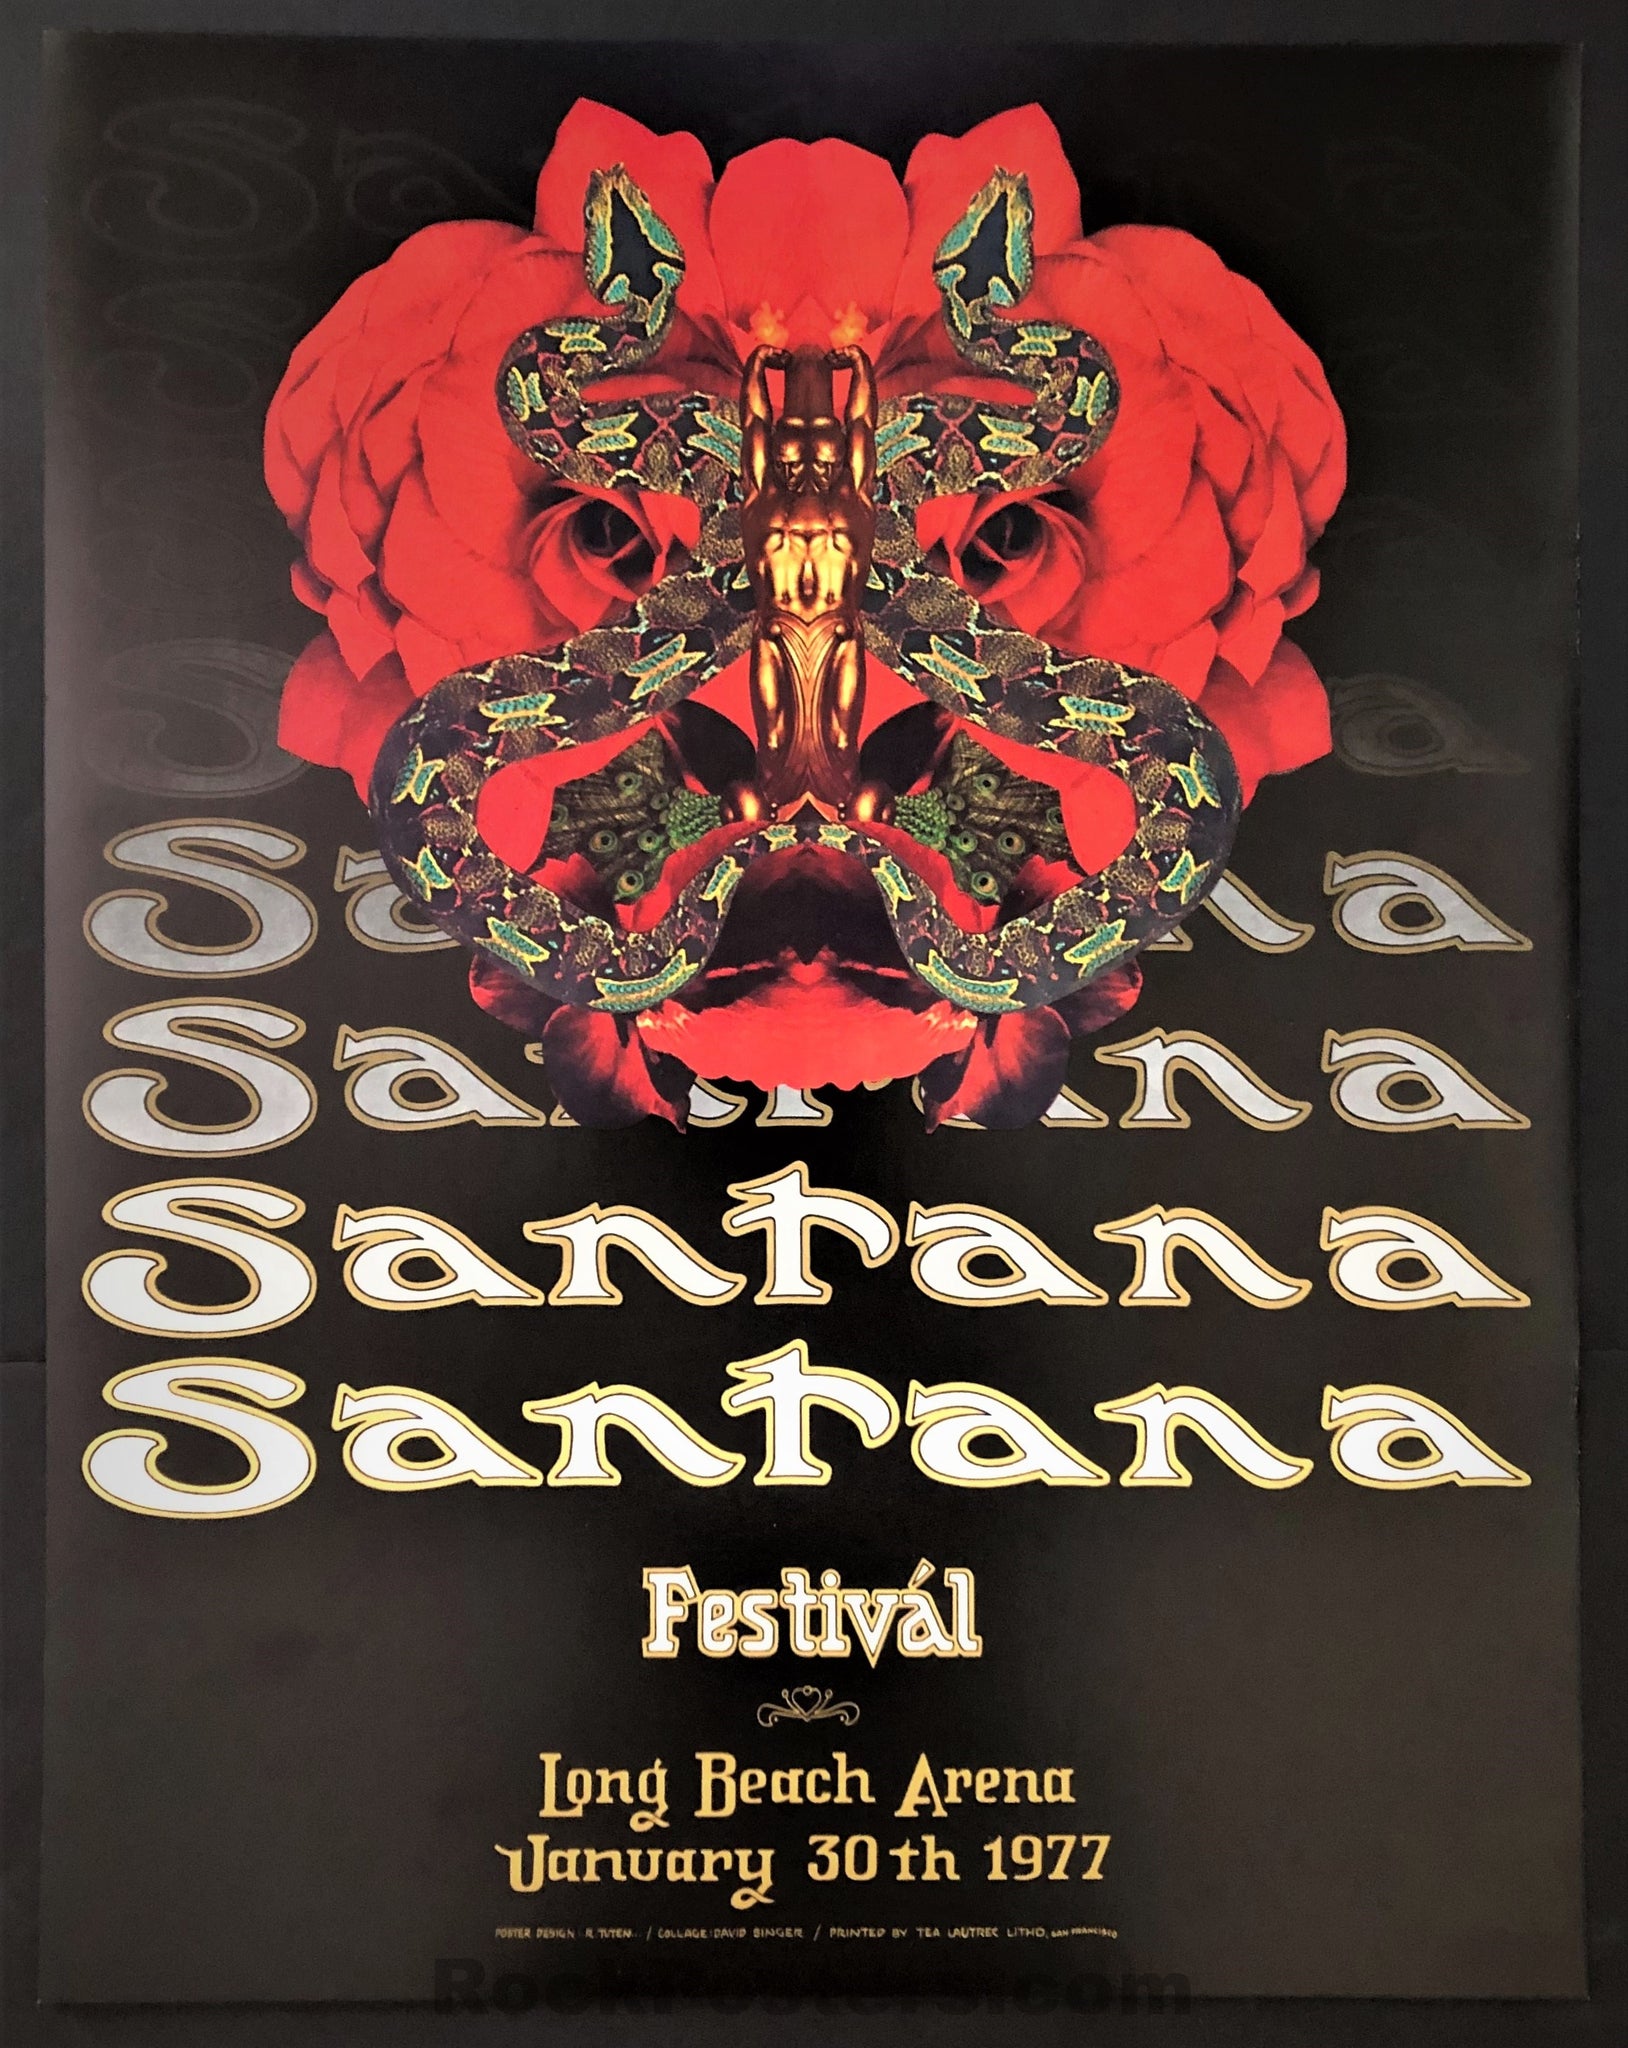 AUCTION - Santana - Randy Tuten/David Singer - Long Beach - 1977 Poster - Excellent